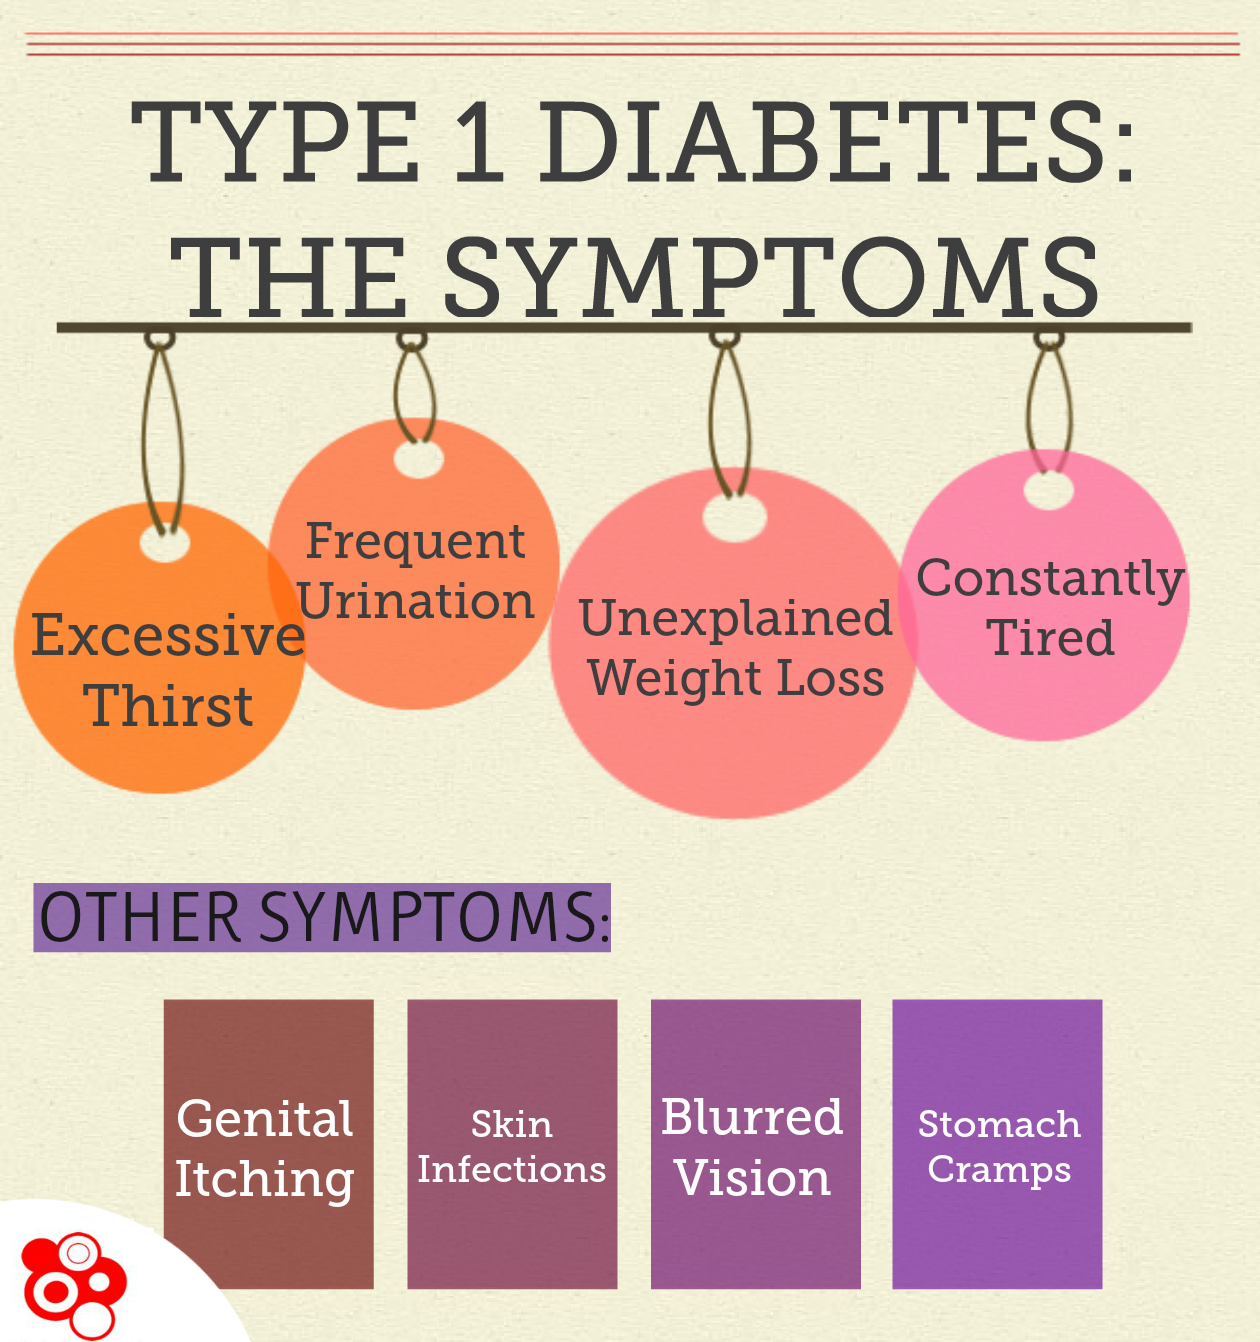 Diabetes type 1 symptoms